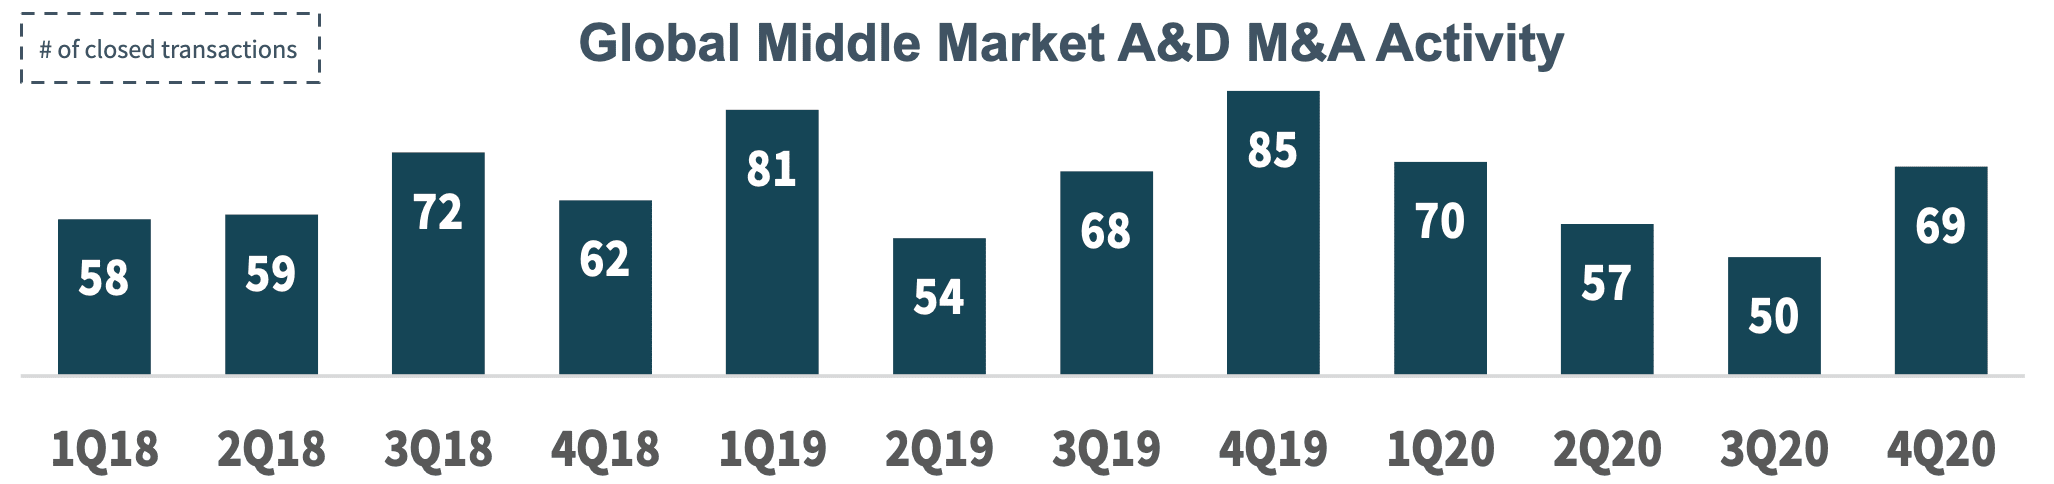 Global Middle Market A&D M&A Activity 